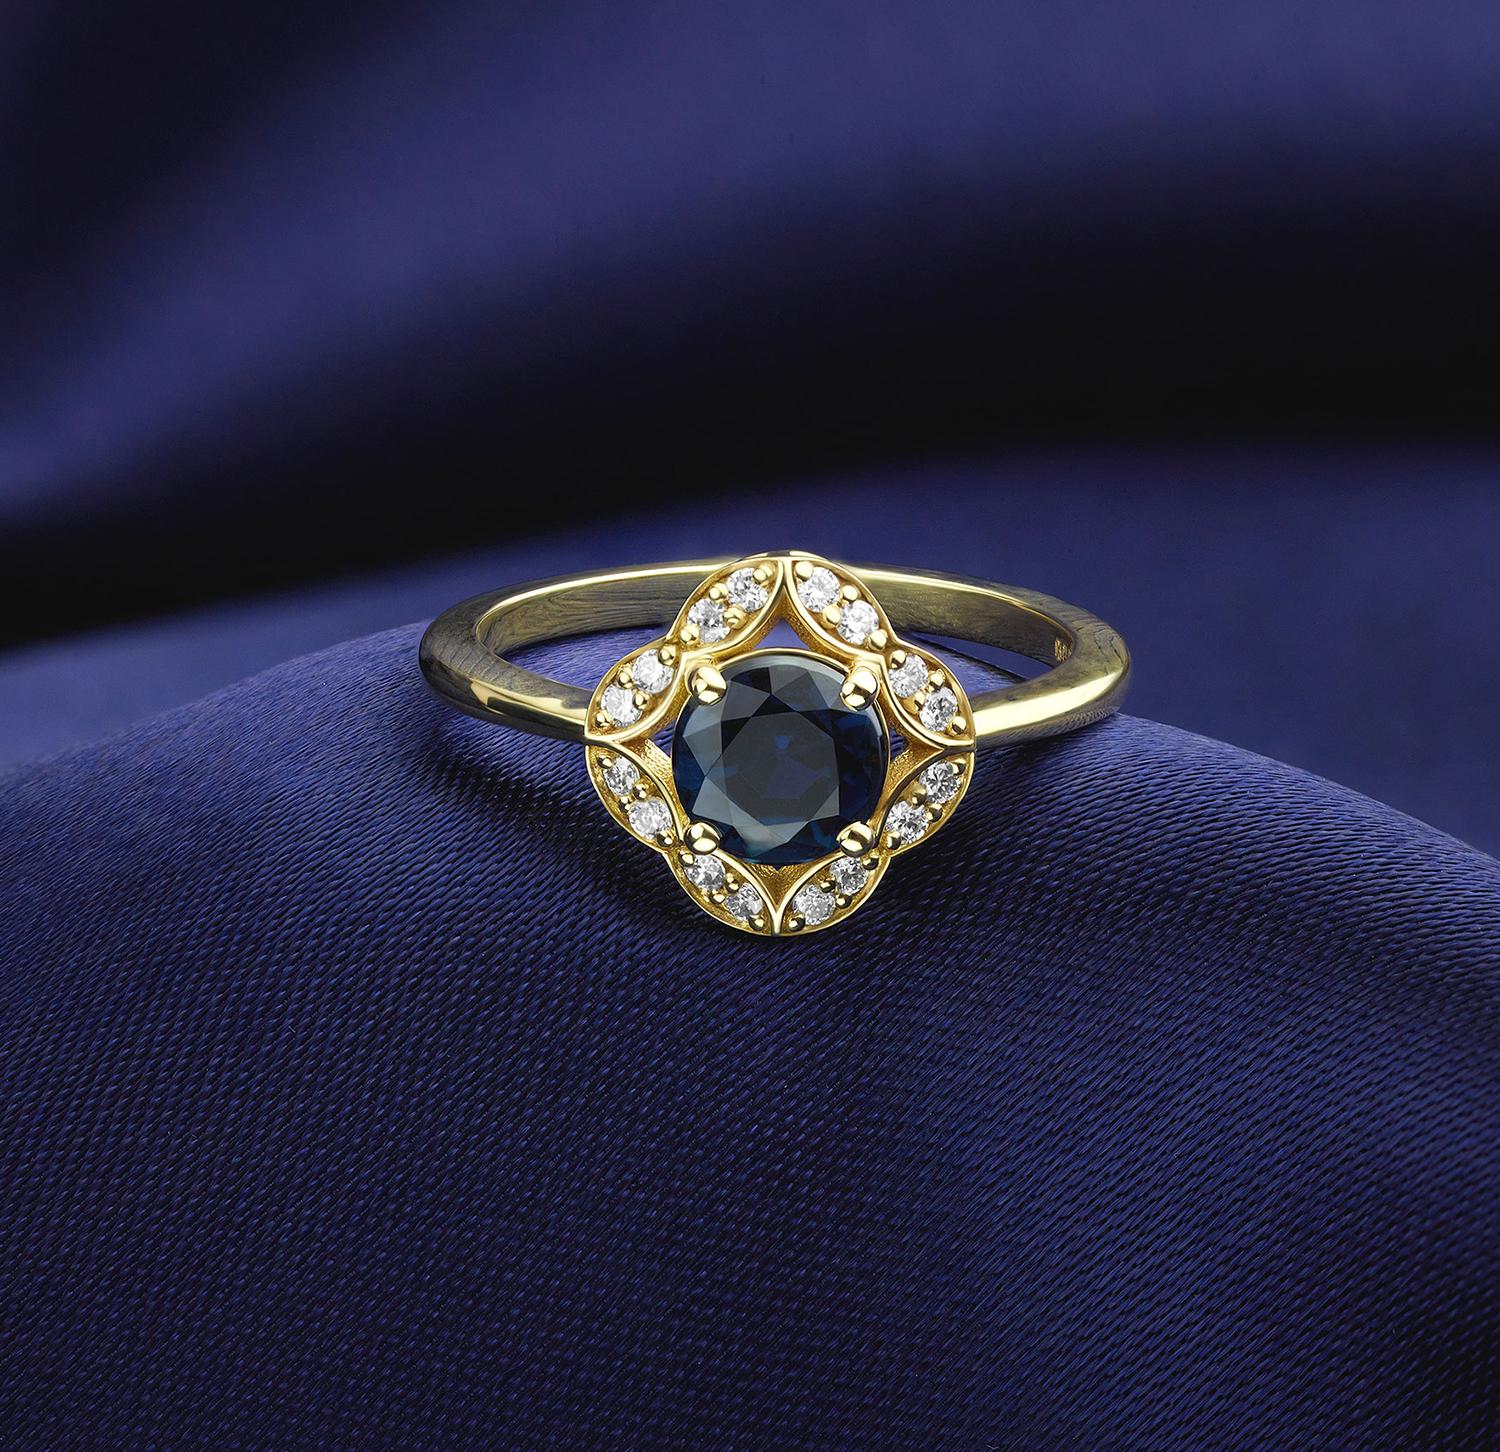 Bespoke blue sapphire and diamond ring Serendipity Diamonds Ryde 01983 567283